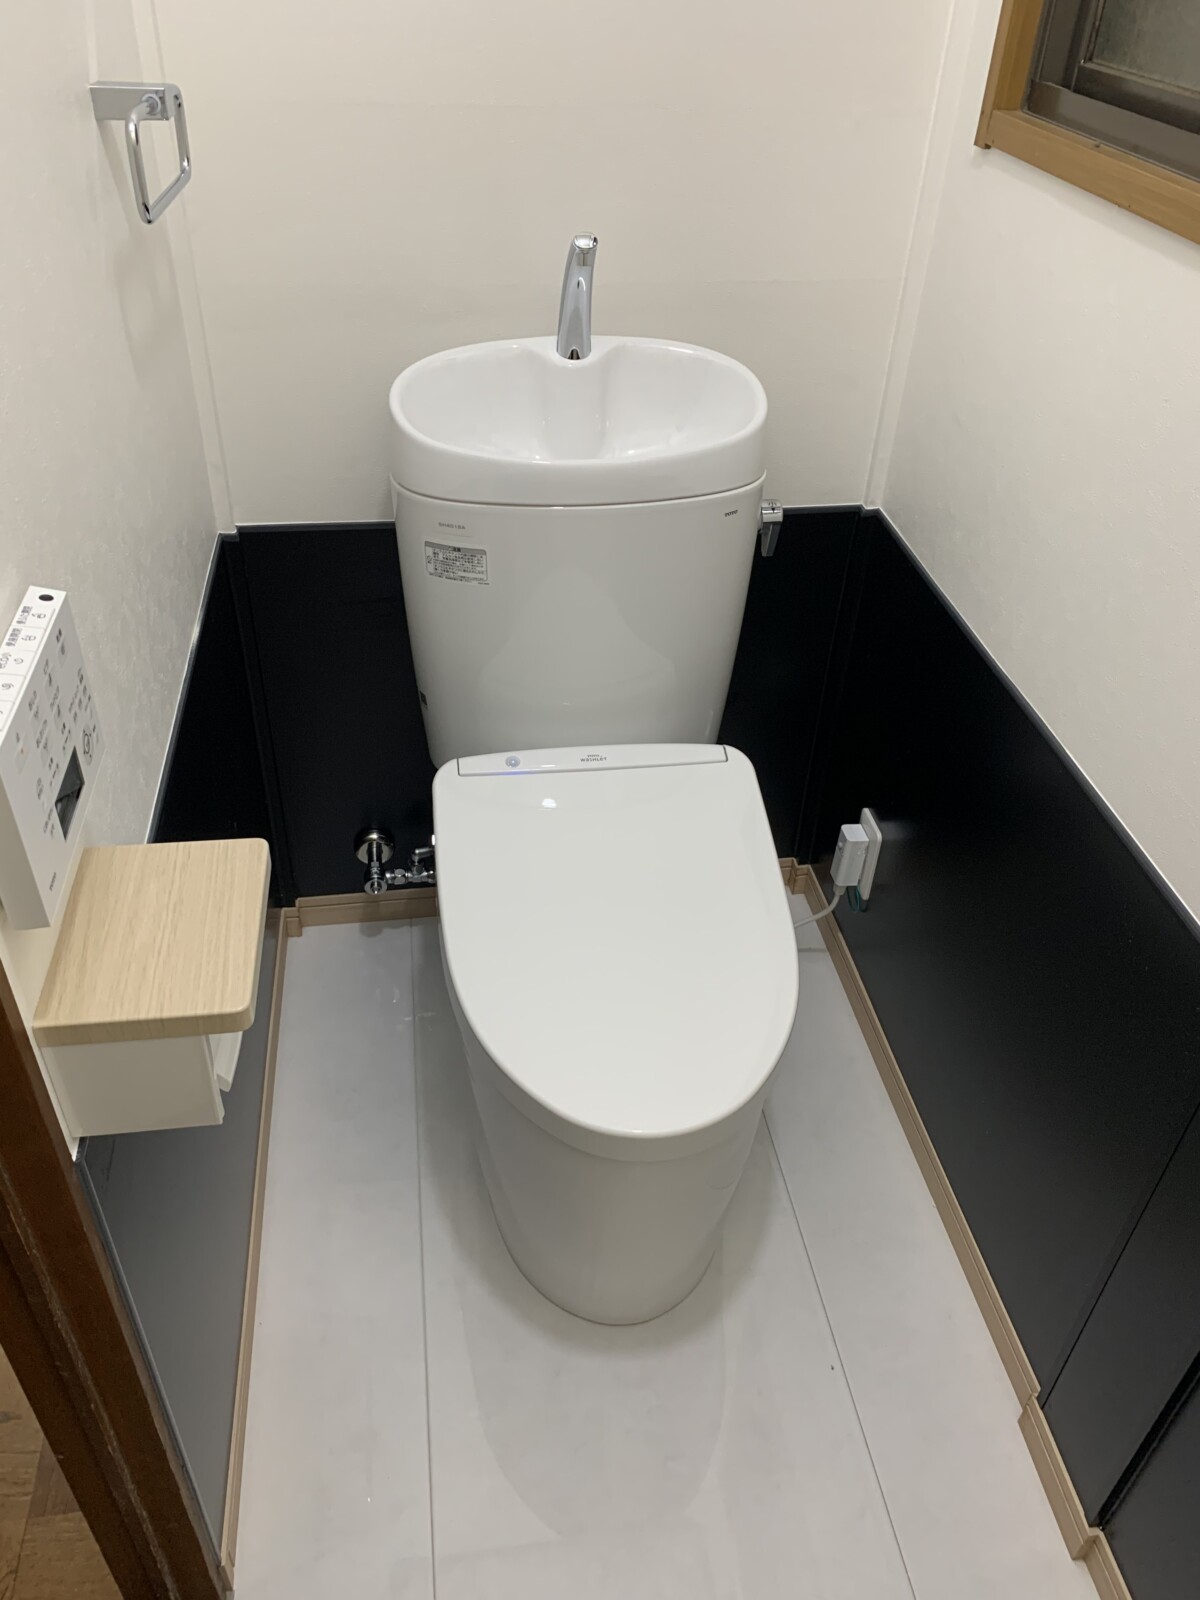 陶器製の床材 ハイドロセラで衛生的なトイレ空間へ 船橋市 施工事例リフォーム創研